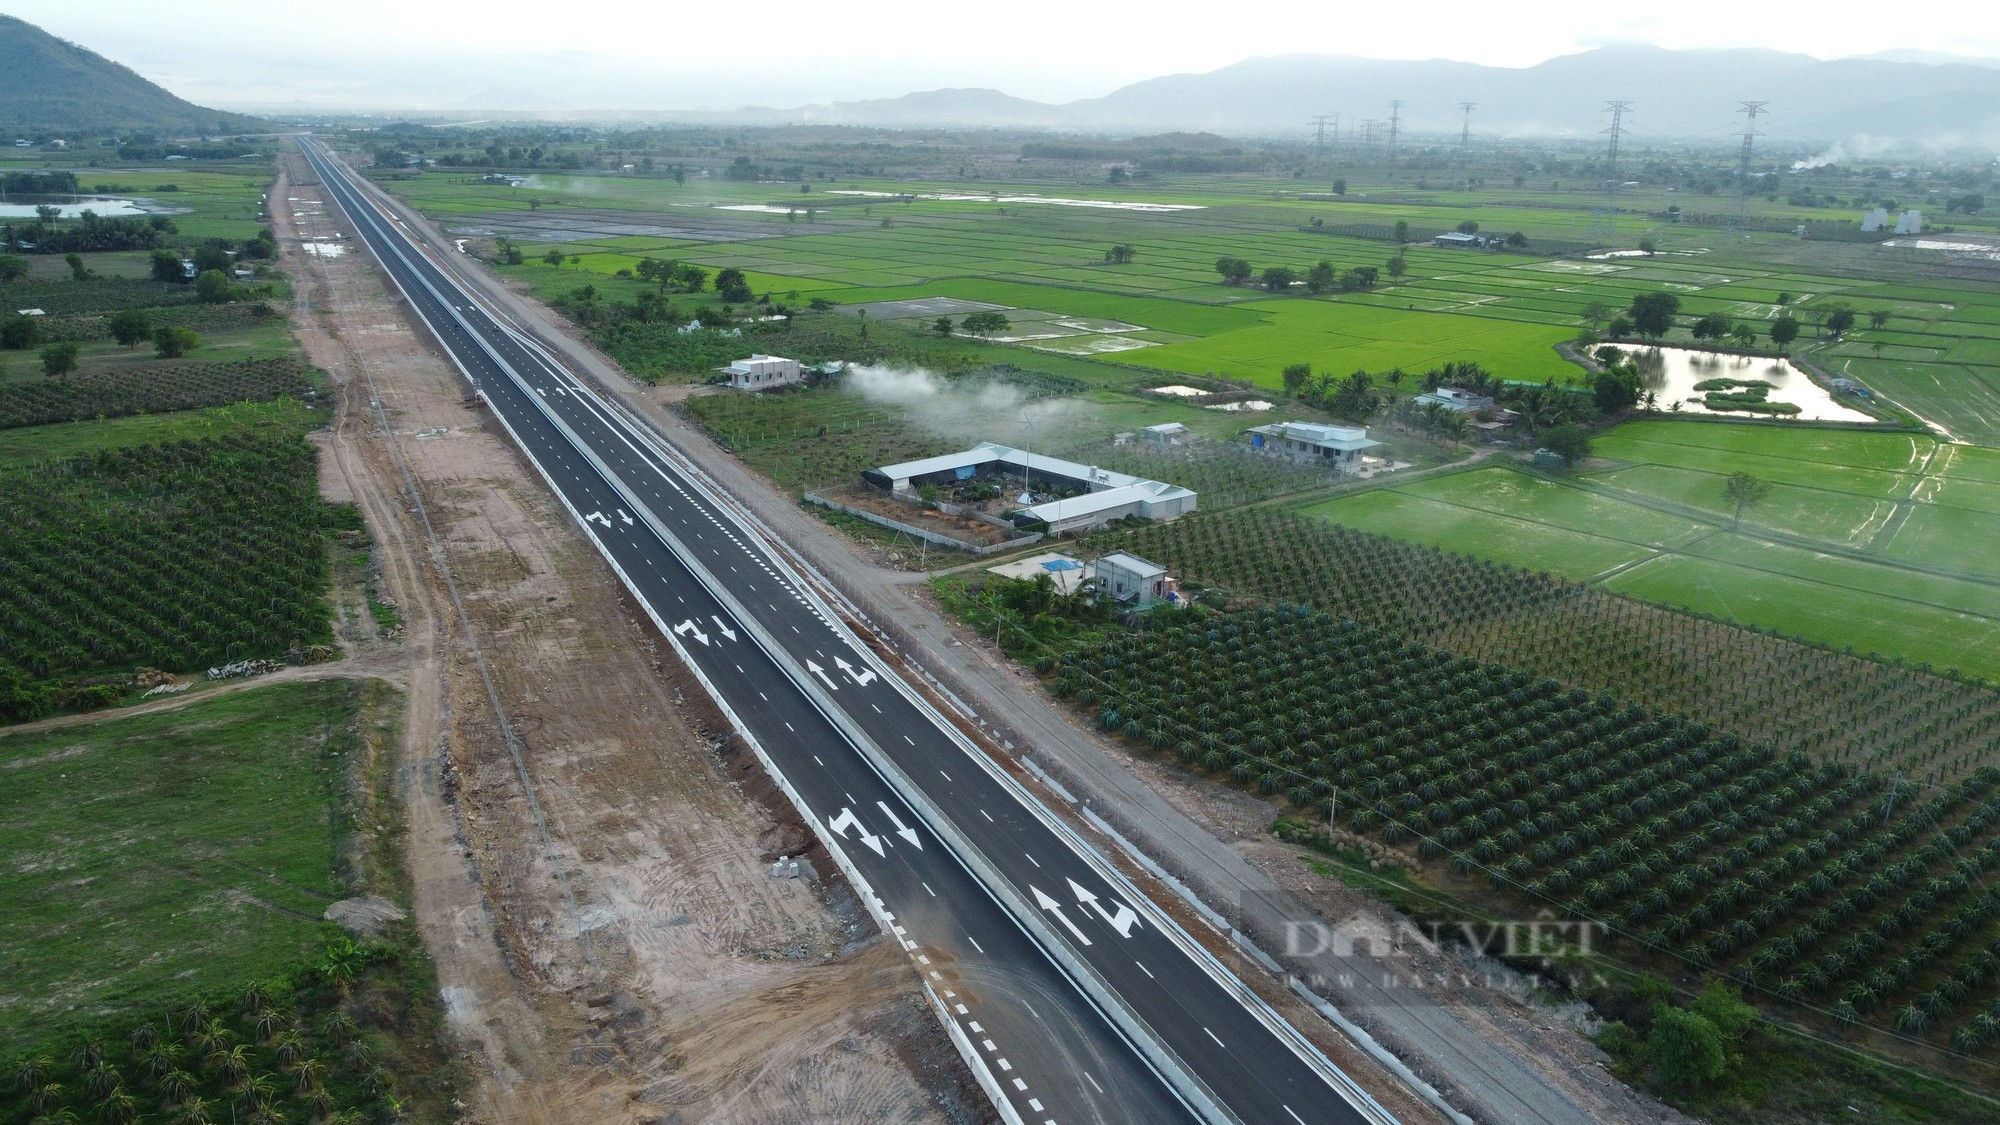 Yêu cầu làm rõ nguyên nhân, đề xuất giải pháp đảm bảo an toàn giao thông trên cao tốc Vĩnh Hảo-Phan Thiết- Dầu Giây  - Ảnh 1.